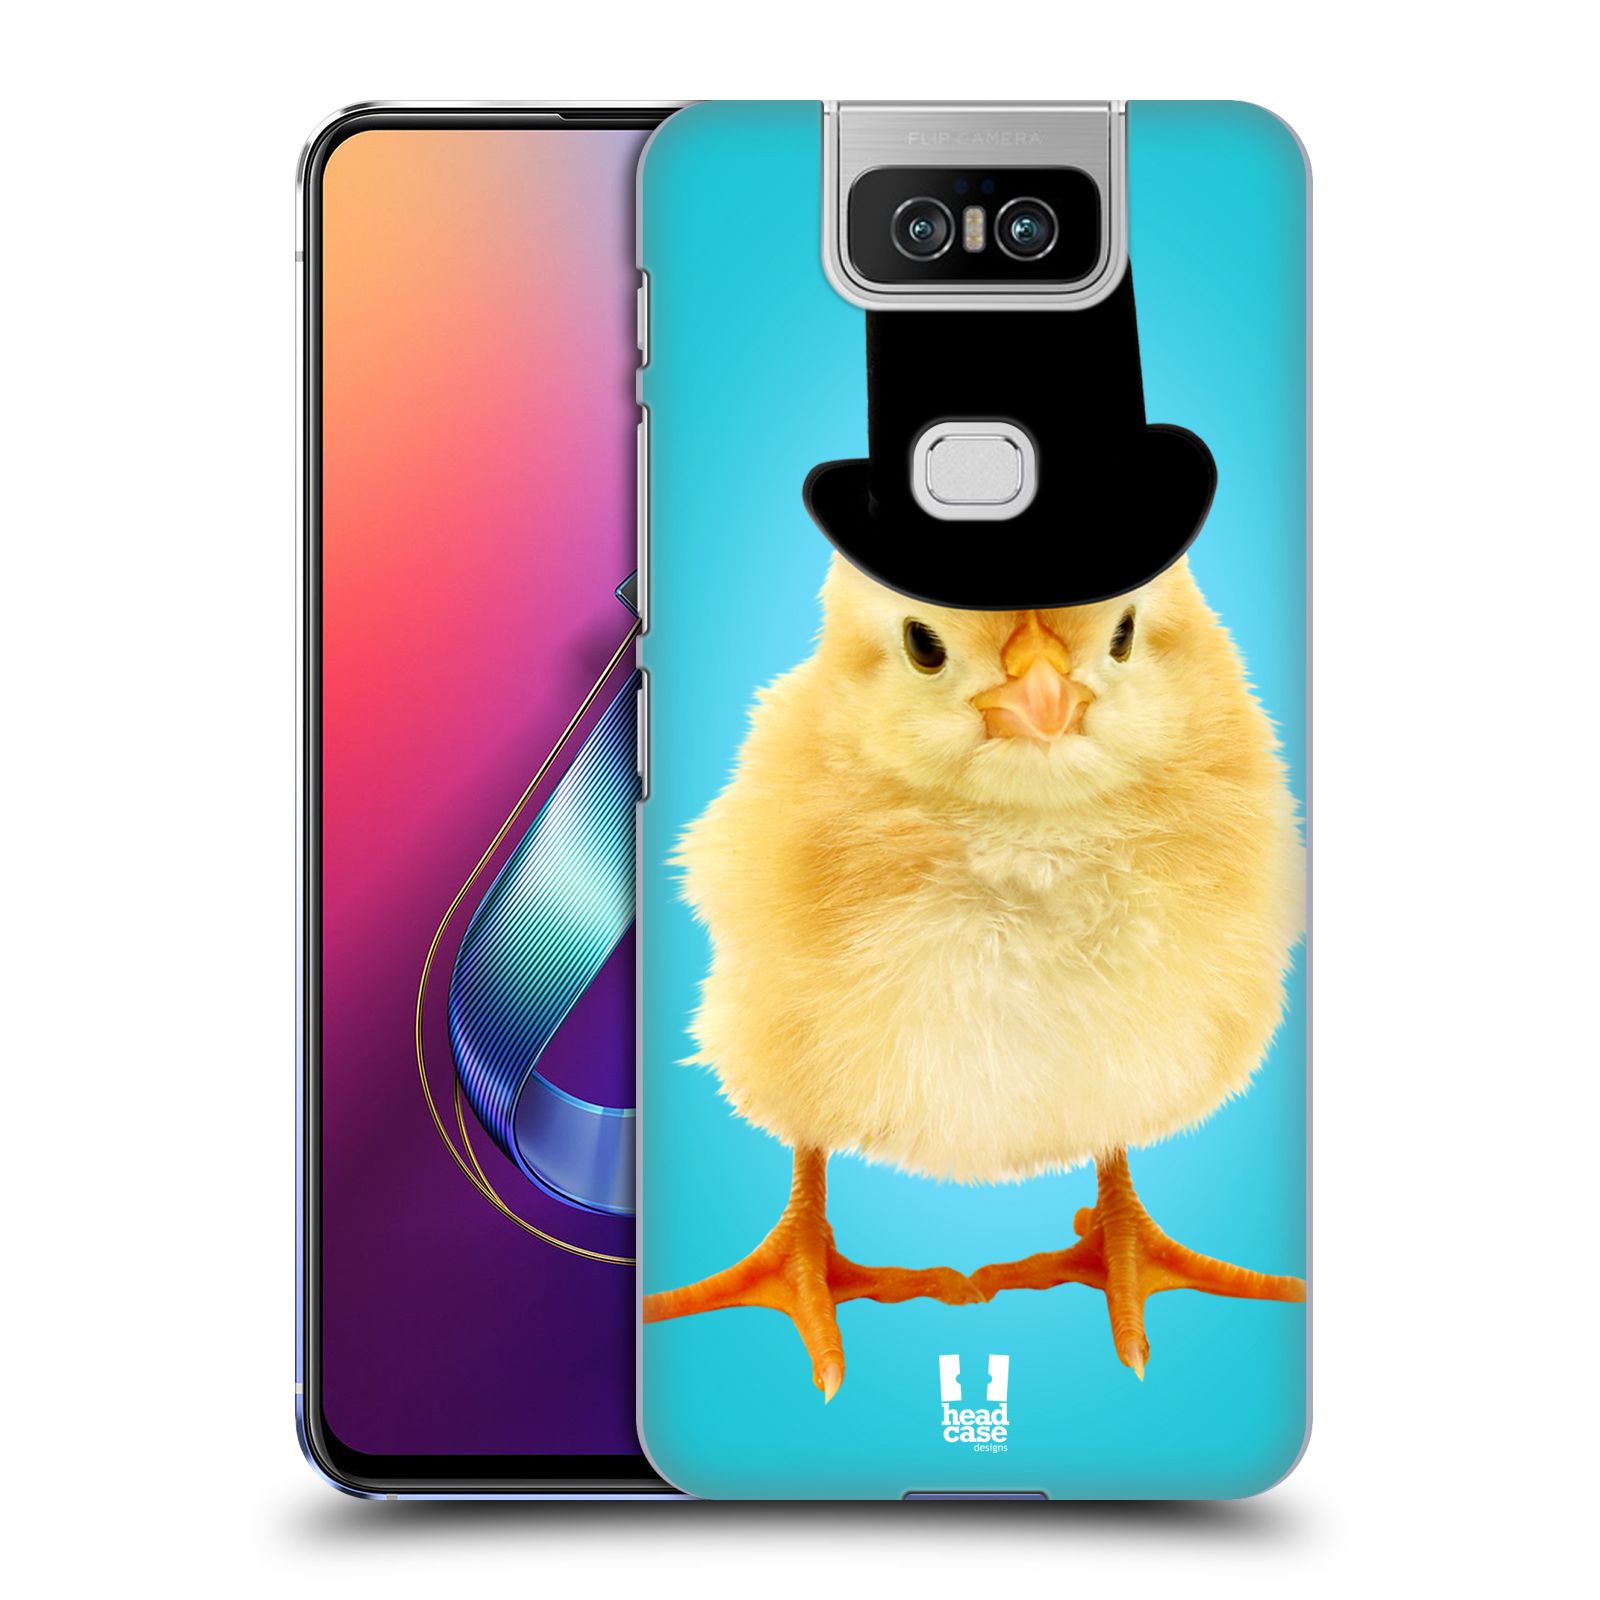 Pouzdro na mobil Asus Zenfone 6 ZS630KL - HEAD CASE - vzor Legrační zvířátka Mr. kuřátko